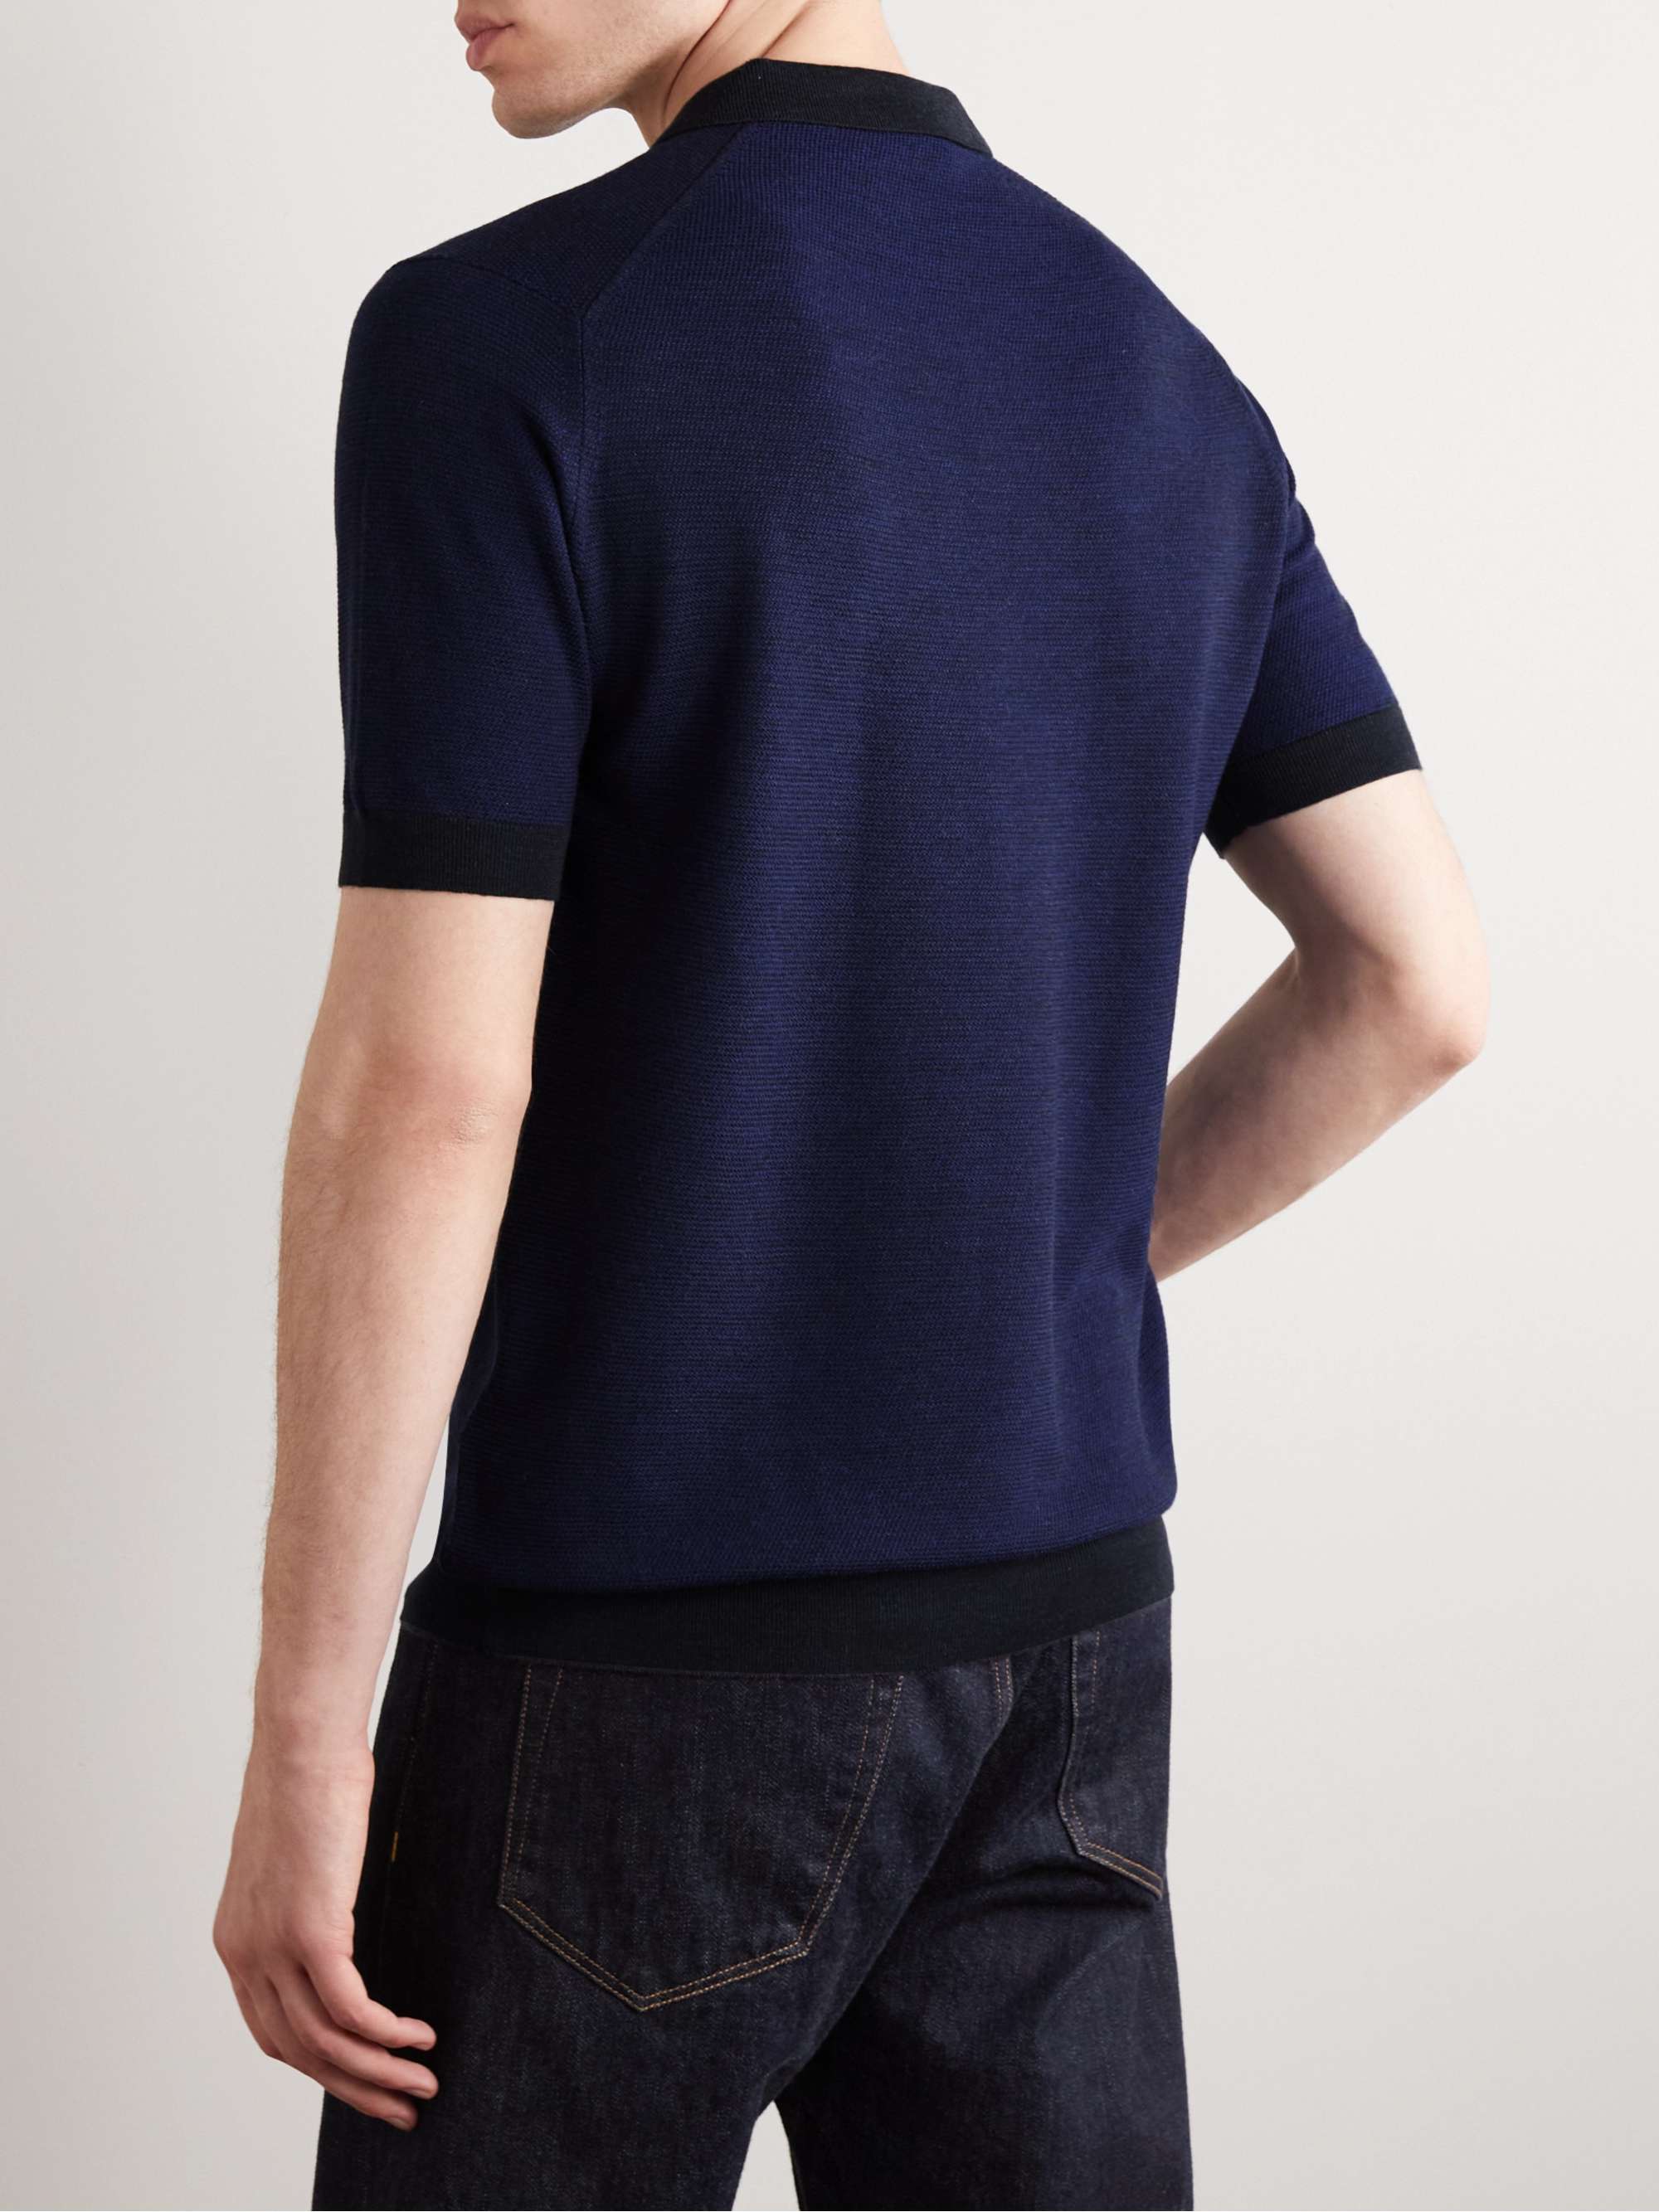 JOHN SMEDLEY Slim-Fit Wool Polo Shirt for Men | MR PORTER